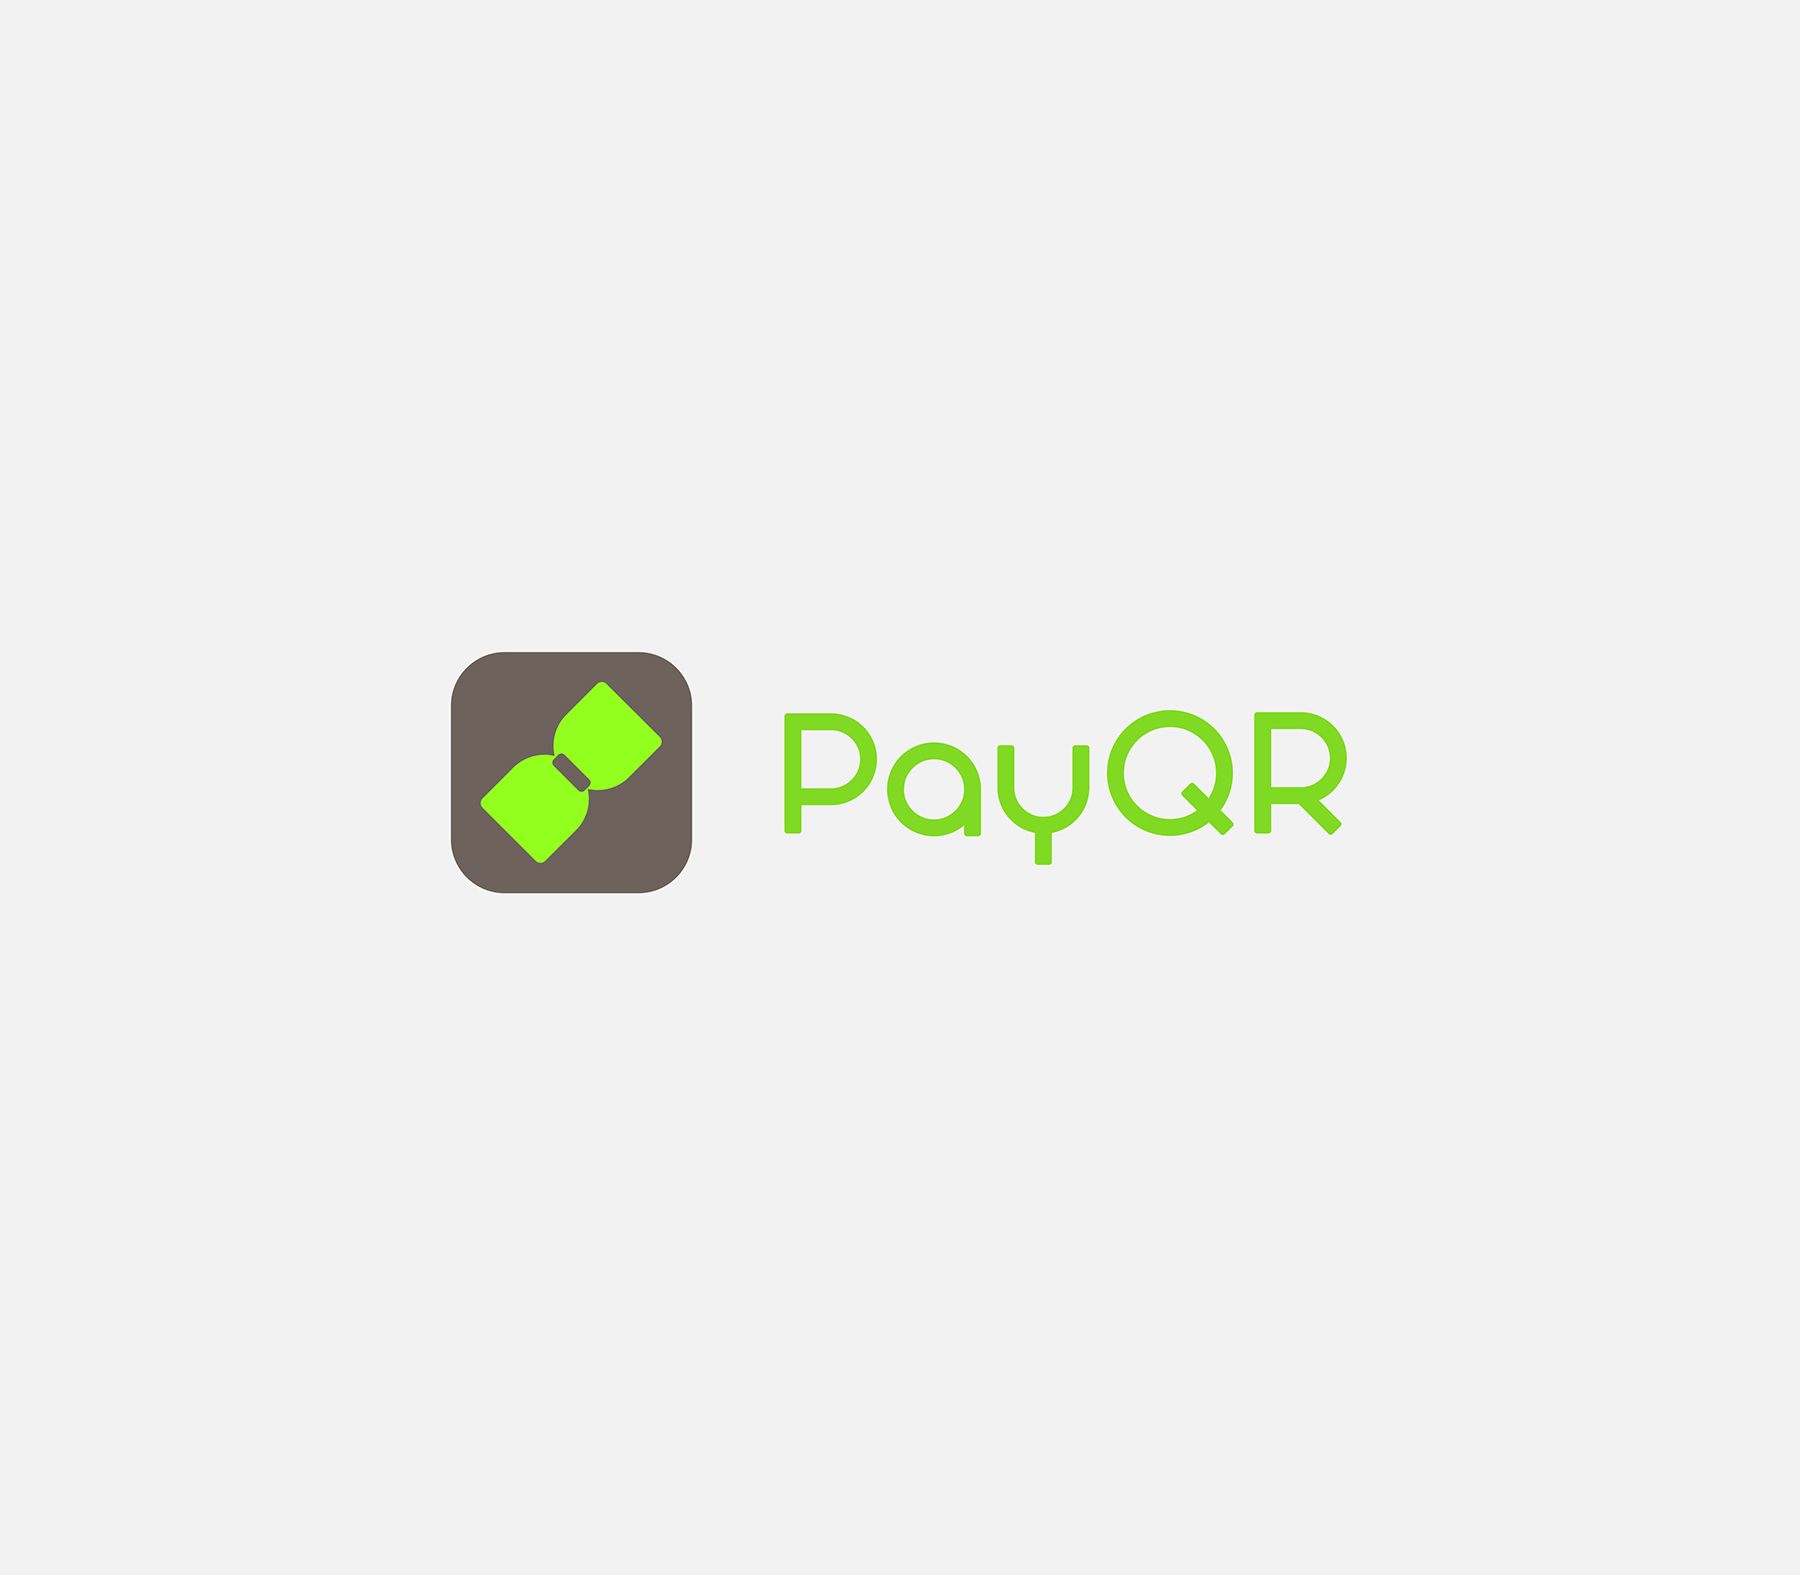 Рестайлинг лого PayQR (заменить сумку на бабочку) - дизайнер helena17771